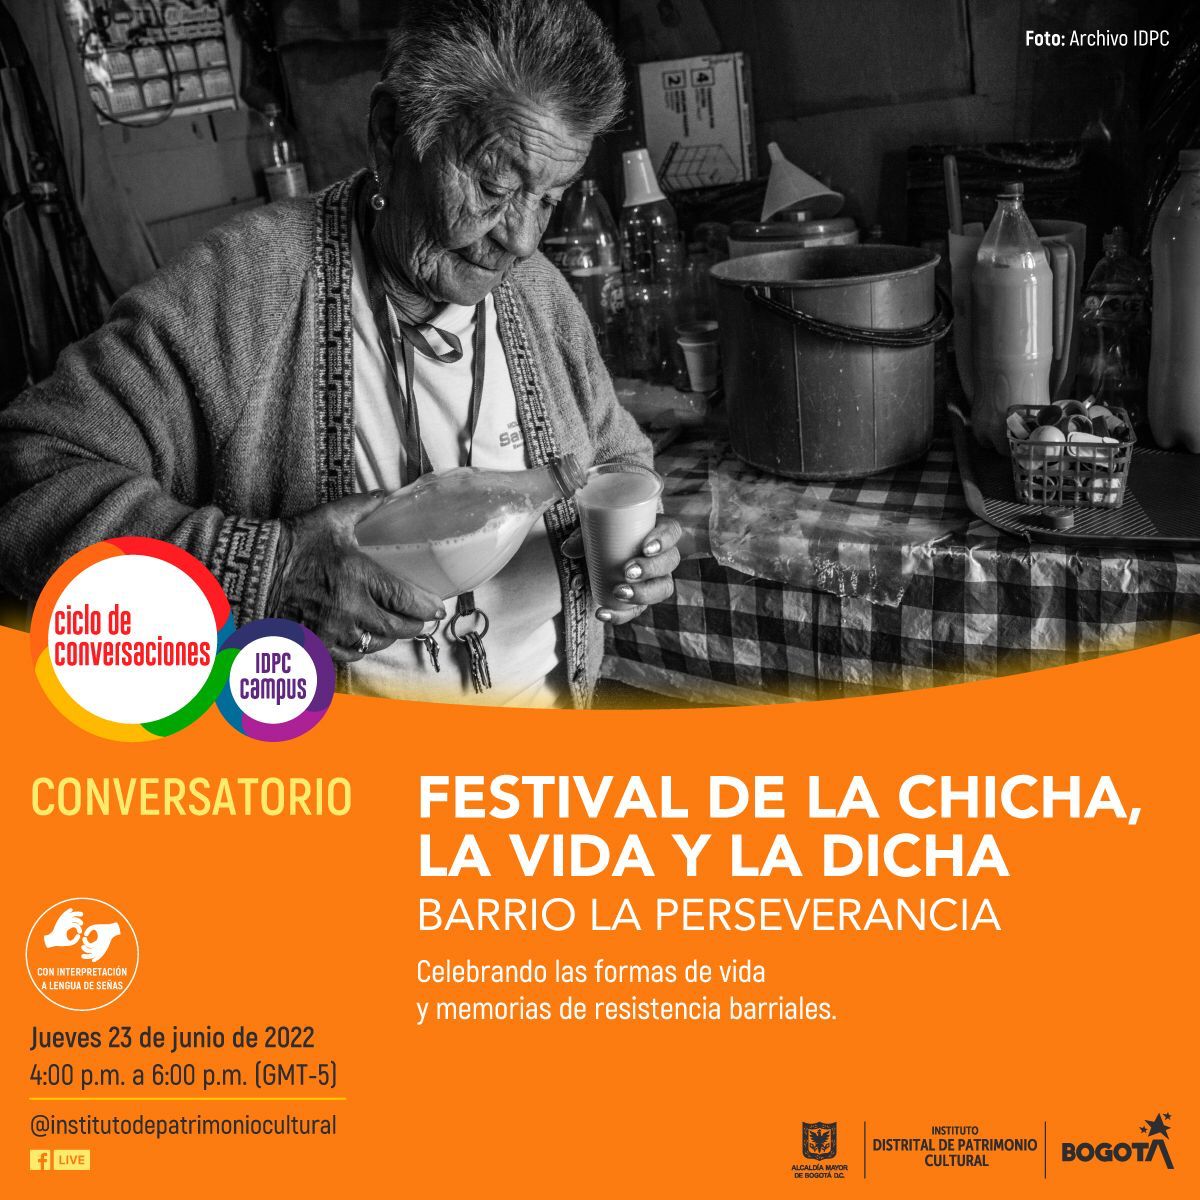 Participa en el conversatorio sobre Festival de la chicha, la vida y la dicha del barrio La Perseverancia